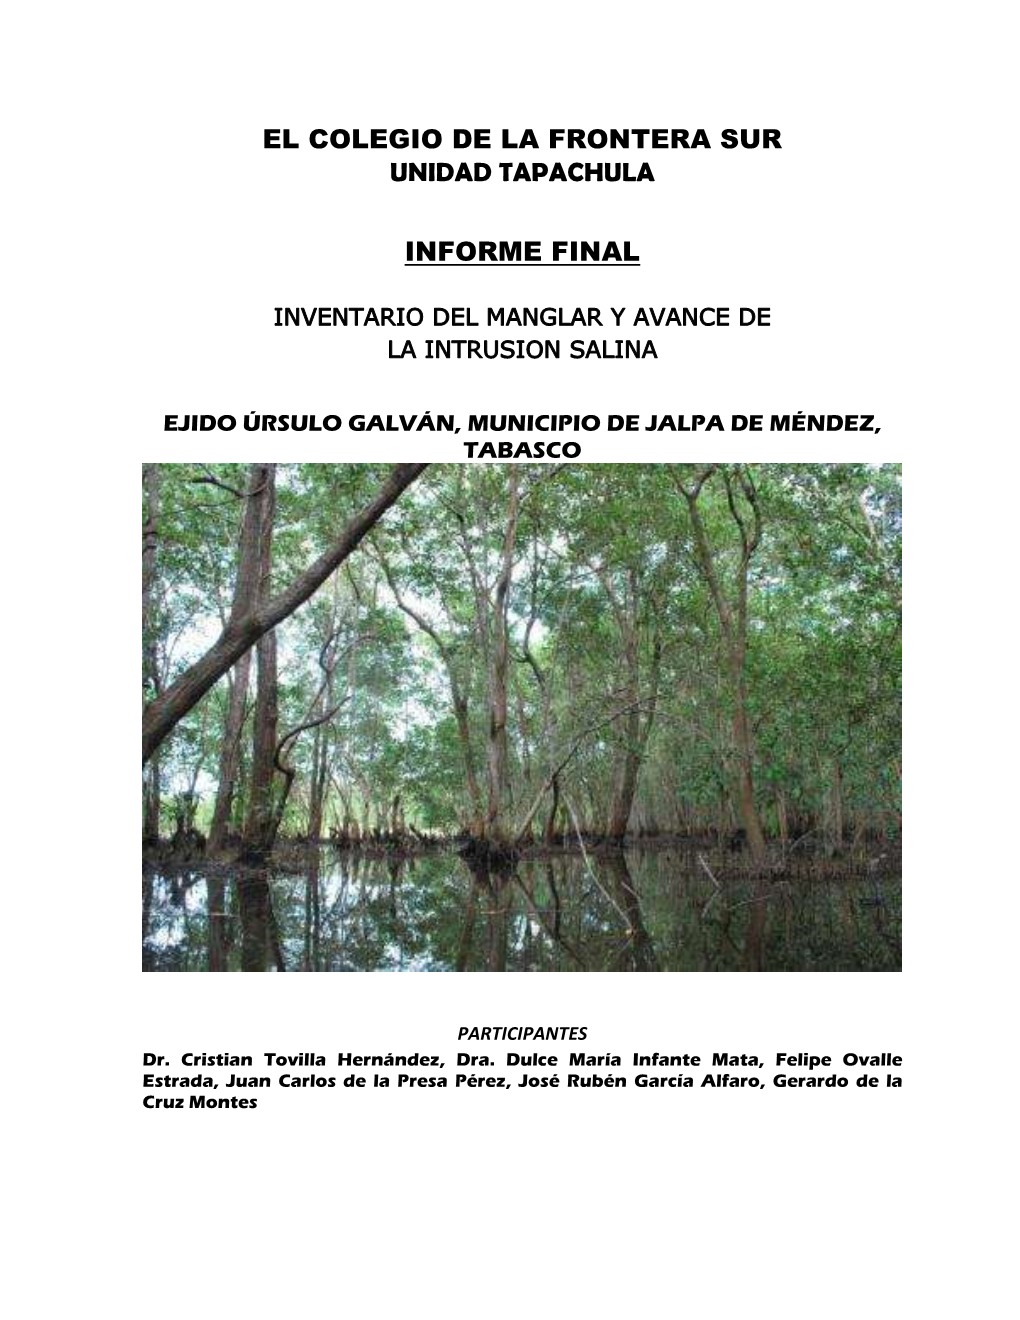 Informe: Inventario Del Manglar Y Avance De La Intrusión Salina En El Ejido Úrsulo 2013 Galván, Municipio De Jalpa De Mendez, Tabasco